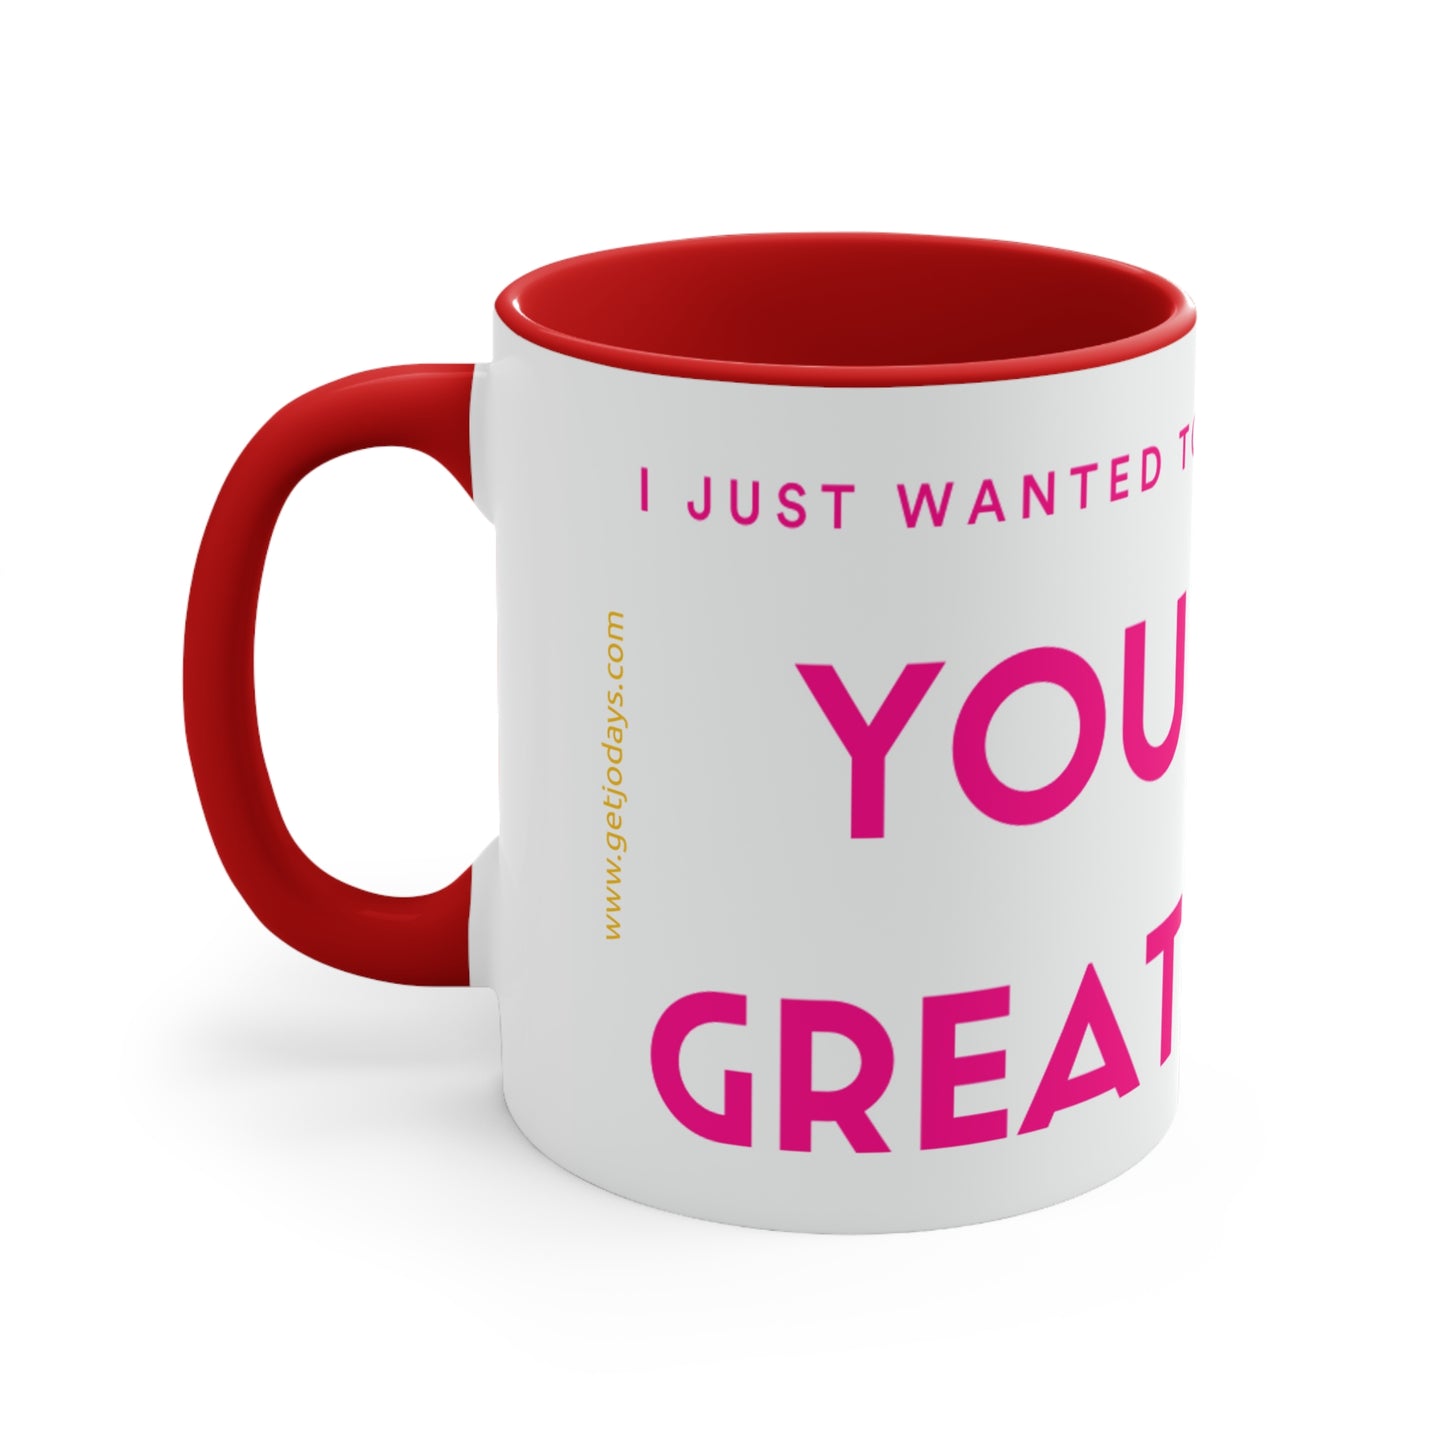 "You Look Great Today" Joyful Coffee Mug, 11oz